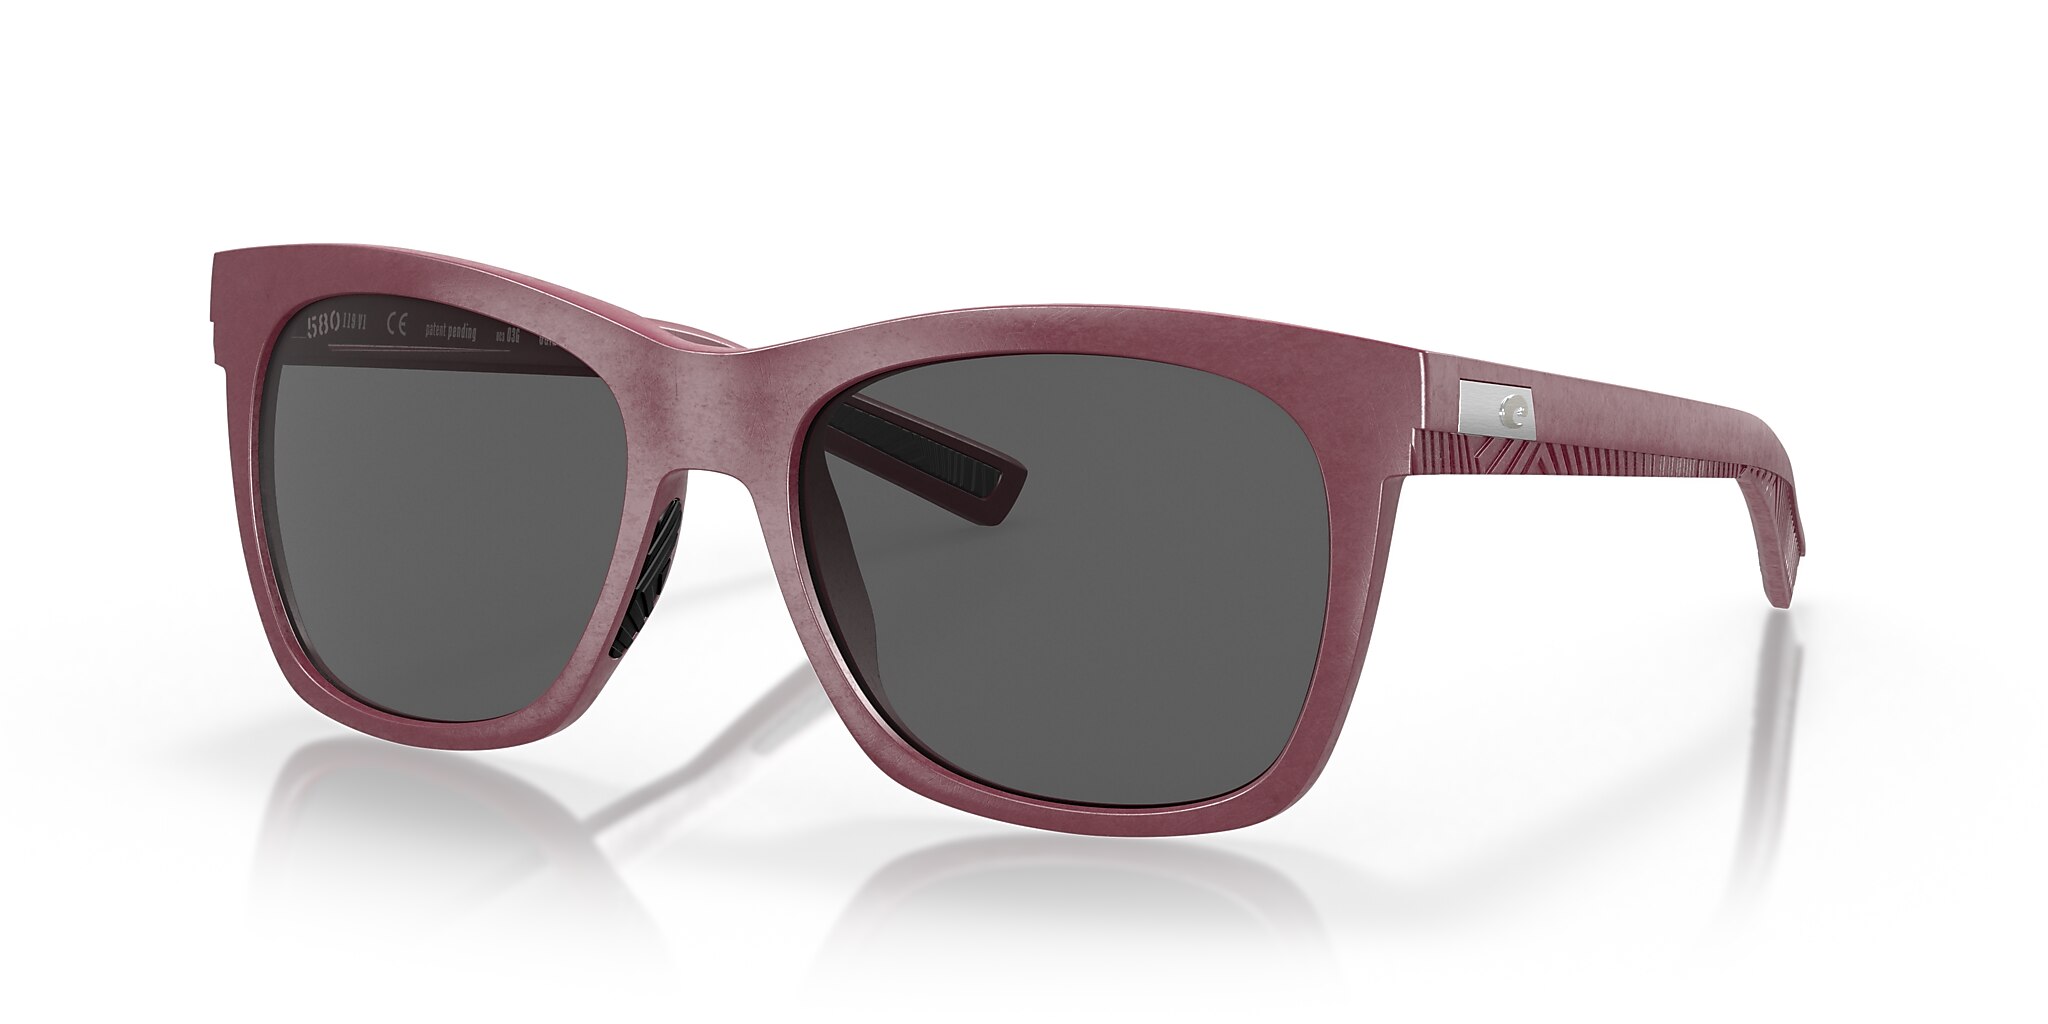 Caldera Polarized Sunglasses in Gray | Costa Del Mar®